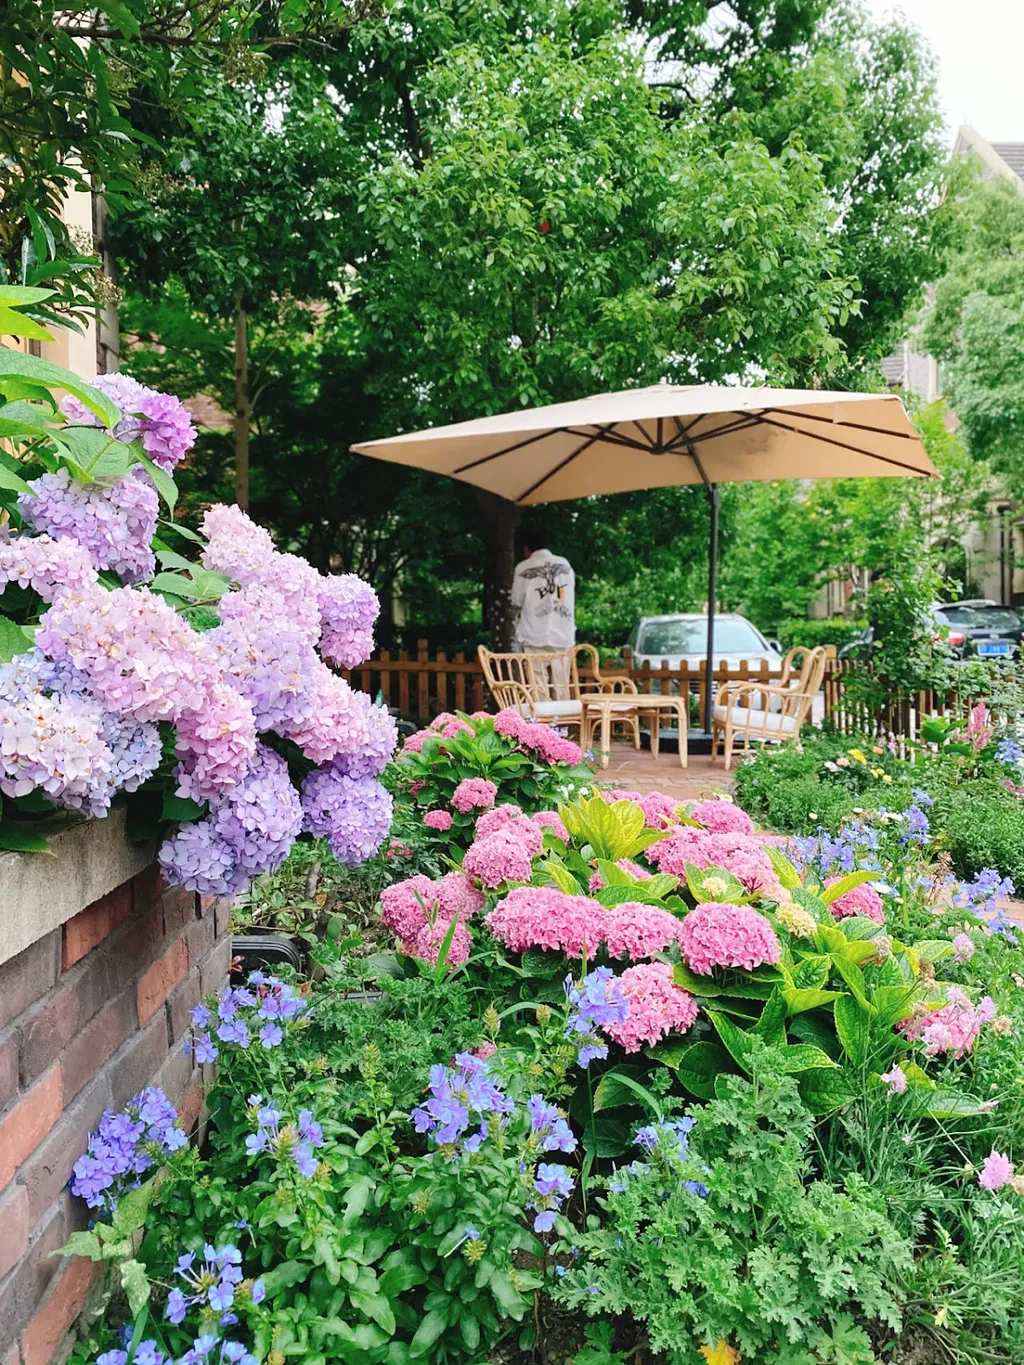 Trồng hoa cẩm tú cầu ở các khu vực mở trong vườn nhà, như các góc hoa, khu vực hoa hồng hoặc dọc theo hành lang. Với vẻ đẹp nổi bật và màu sắc phong phú, chúng sẽ tạo ra điểm nhấn tuyệt vời cho không gian xanh của bạn.